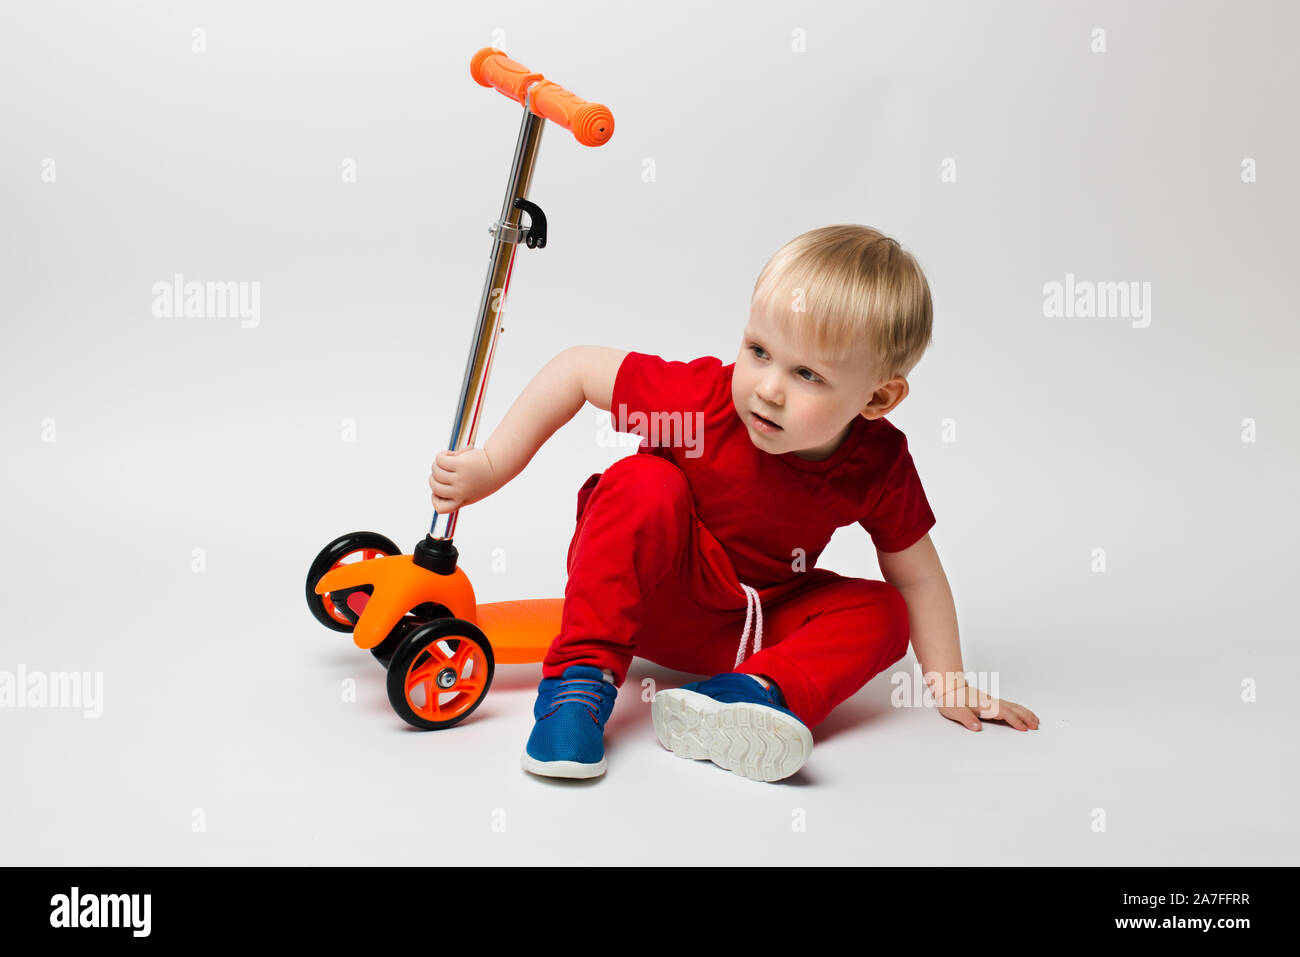 Niedliches Kleinkind Kind in ein rotes T-Shirt fiel von einem Roller und sitzt, Aufnahmen im Studio auf einem weißen Hintergrund. Konzept für Artikel über Kindheit ein Stockfoto